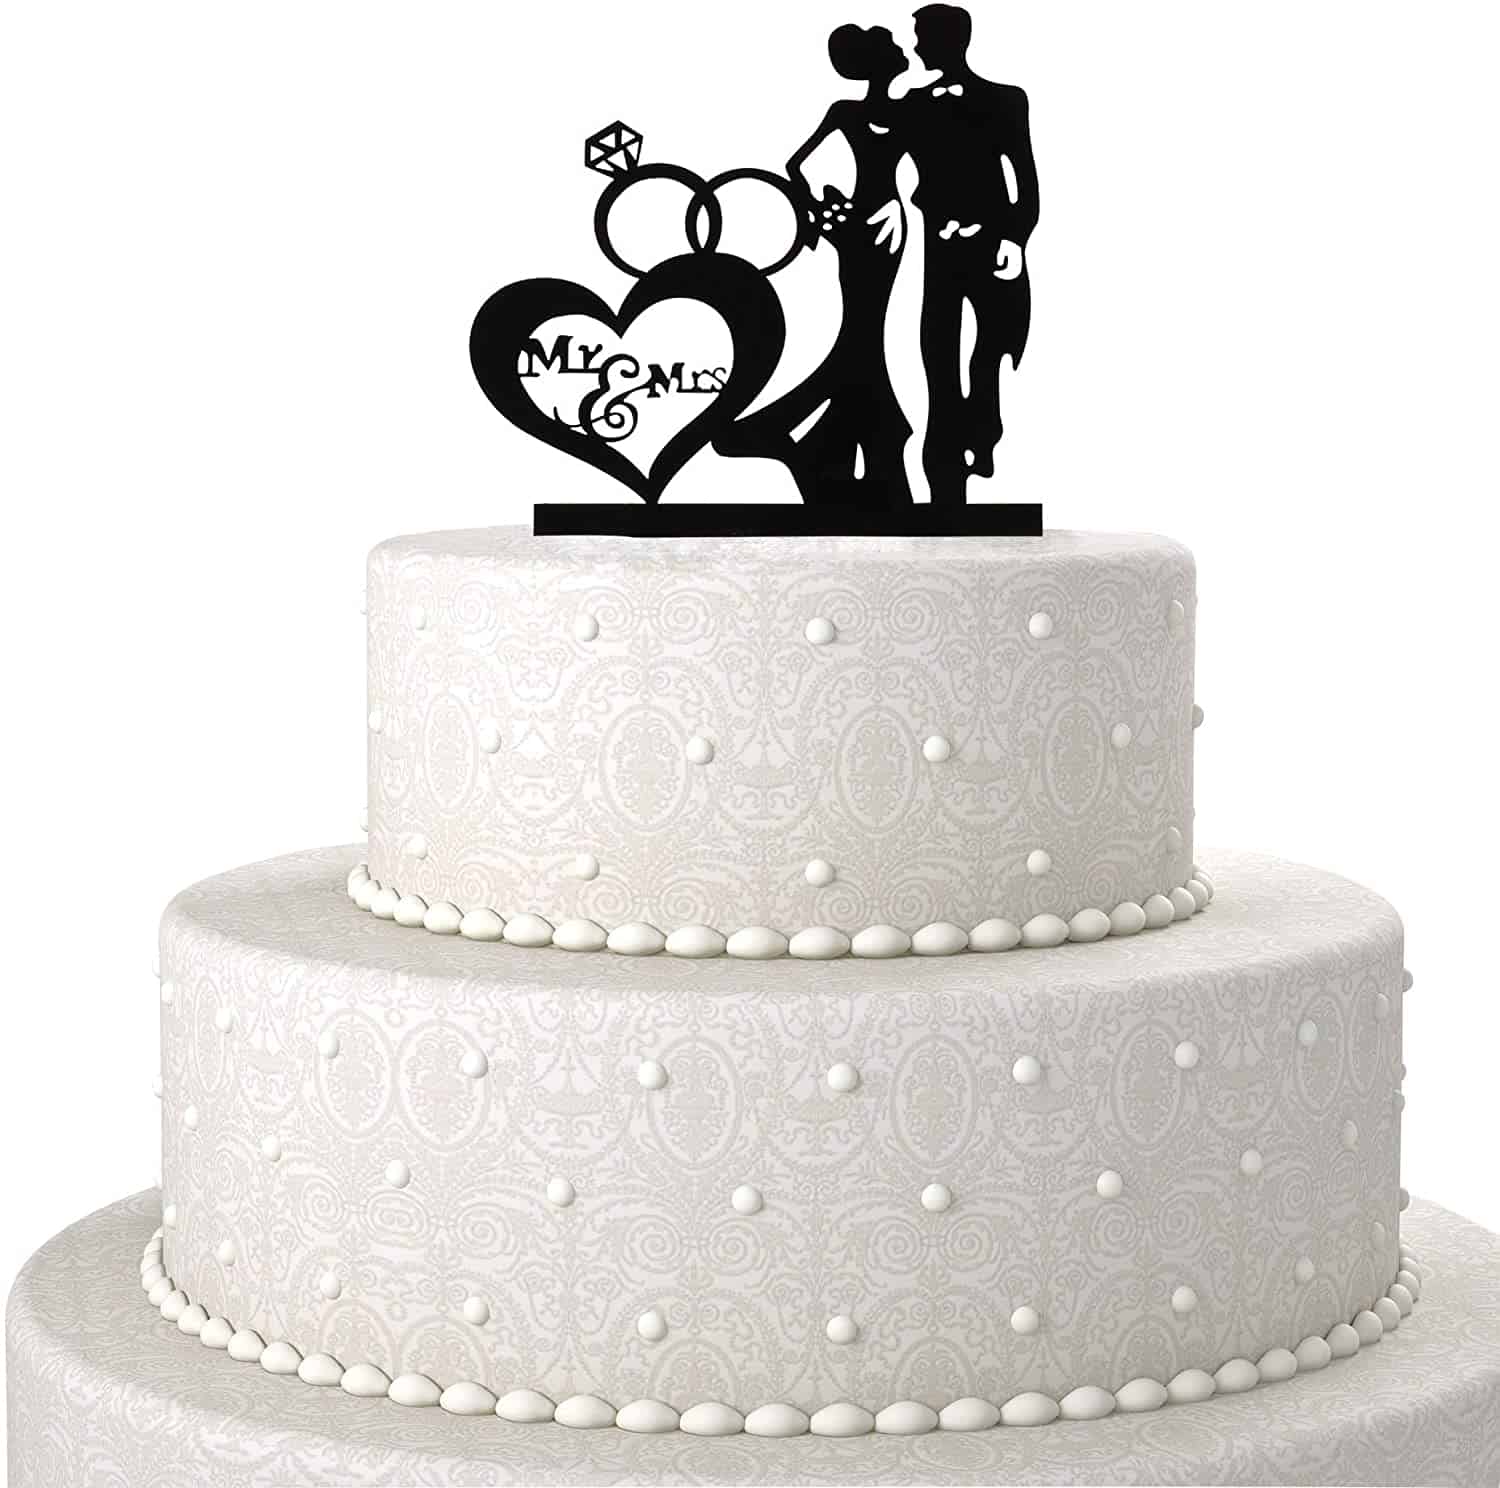 Décoration Gateau Personnalisée Mariage - Cake Topper Mariage